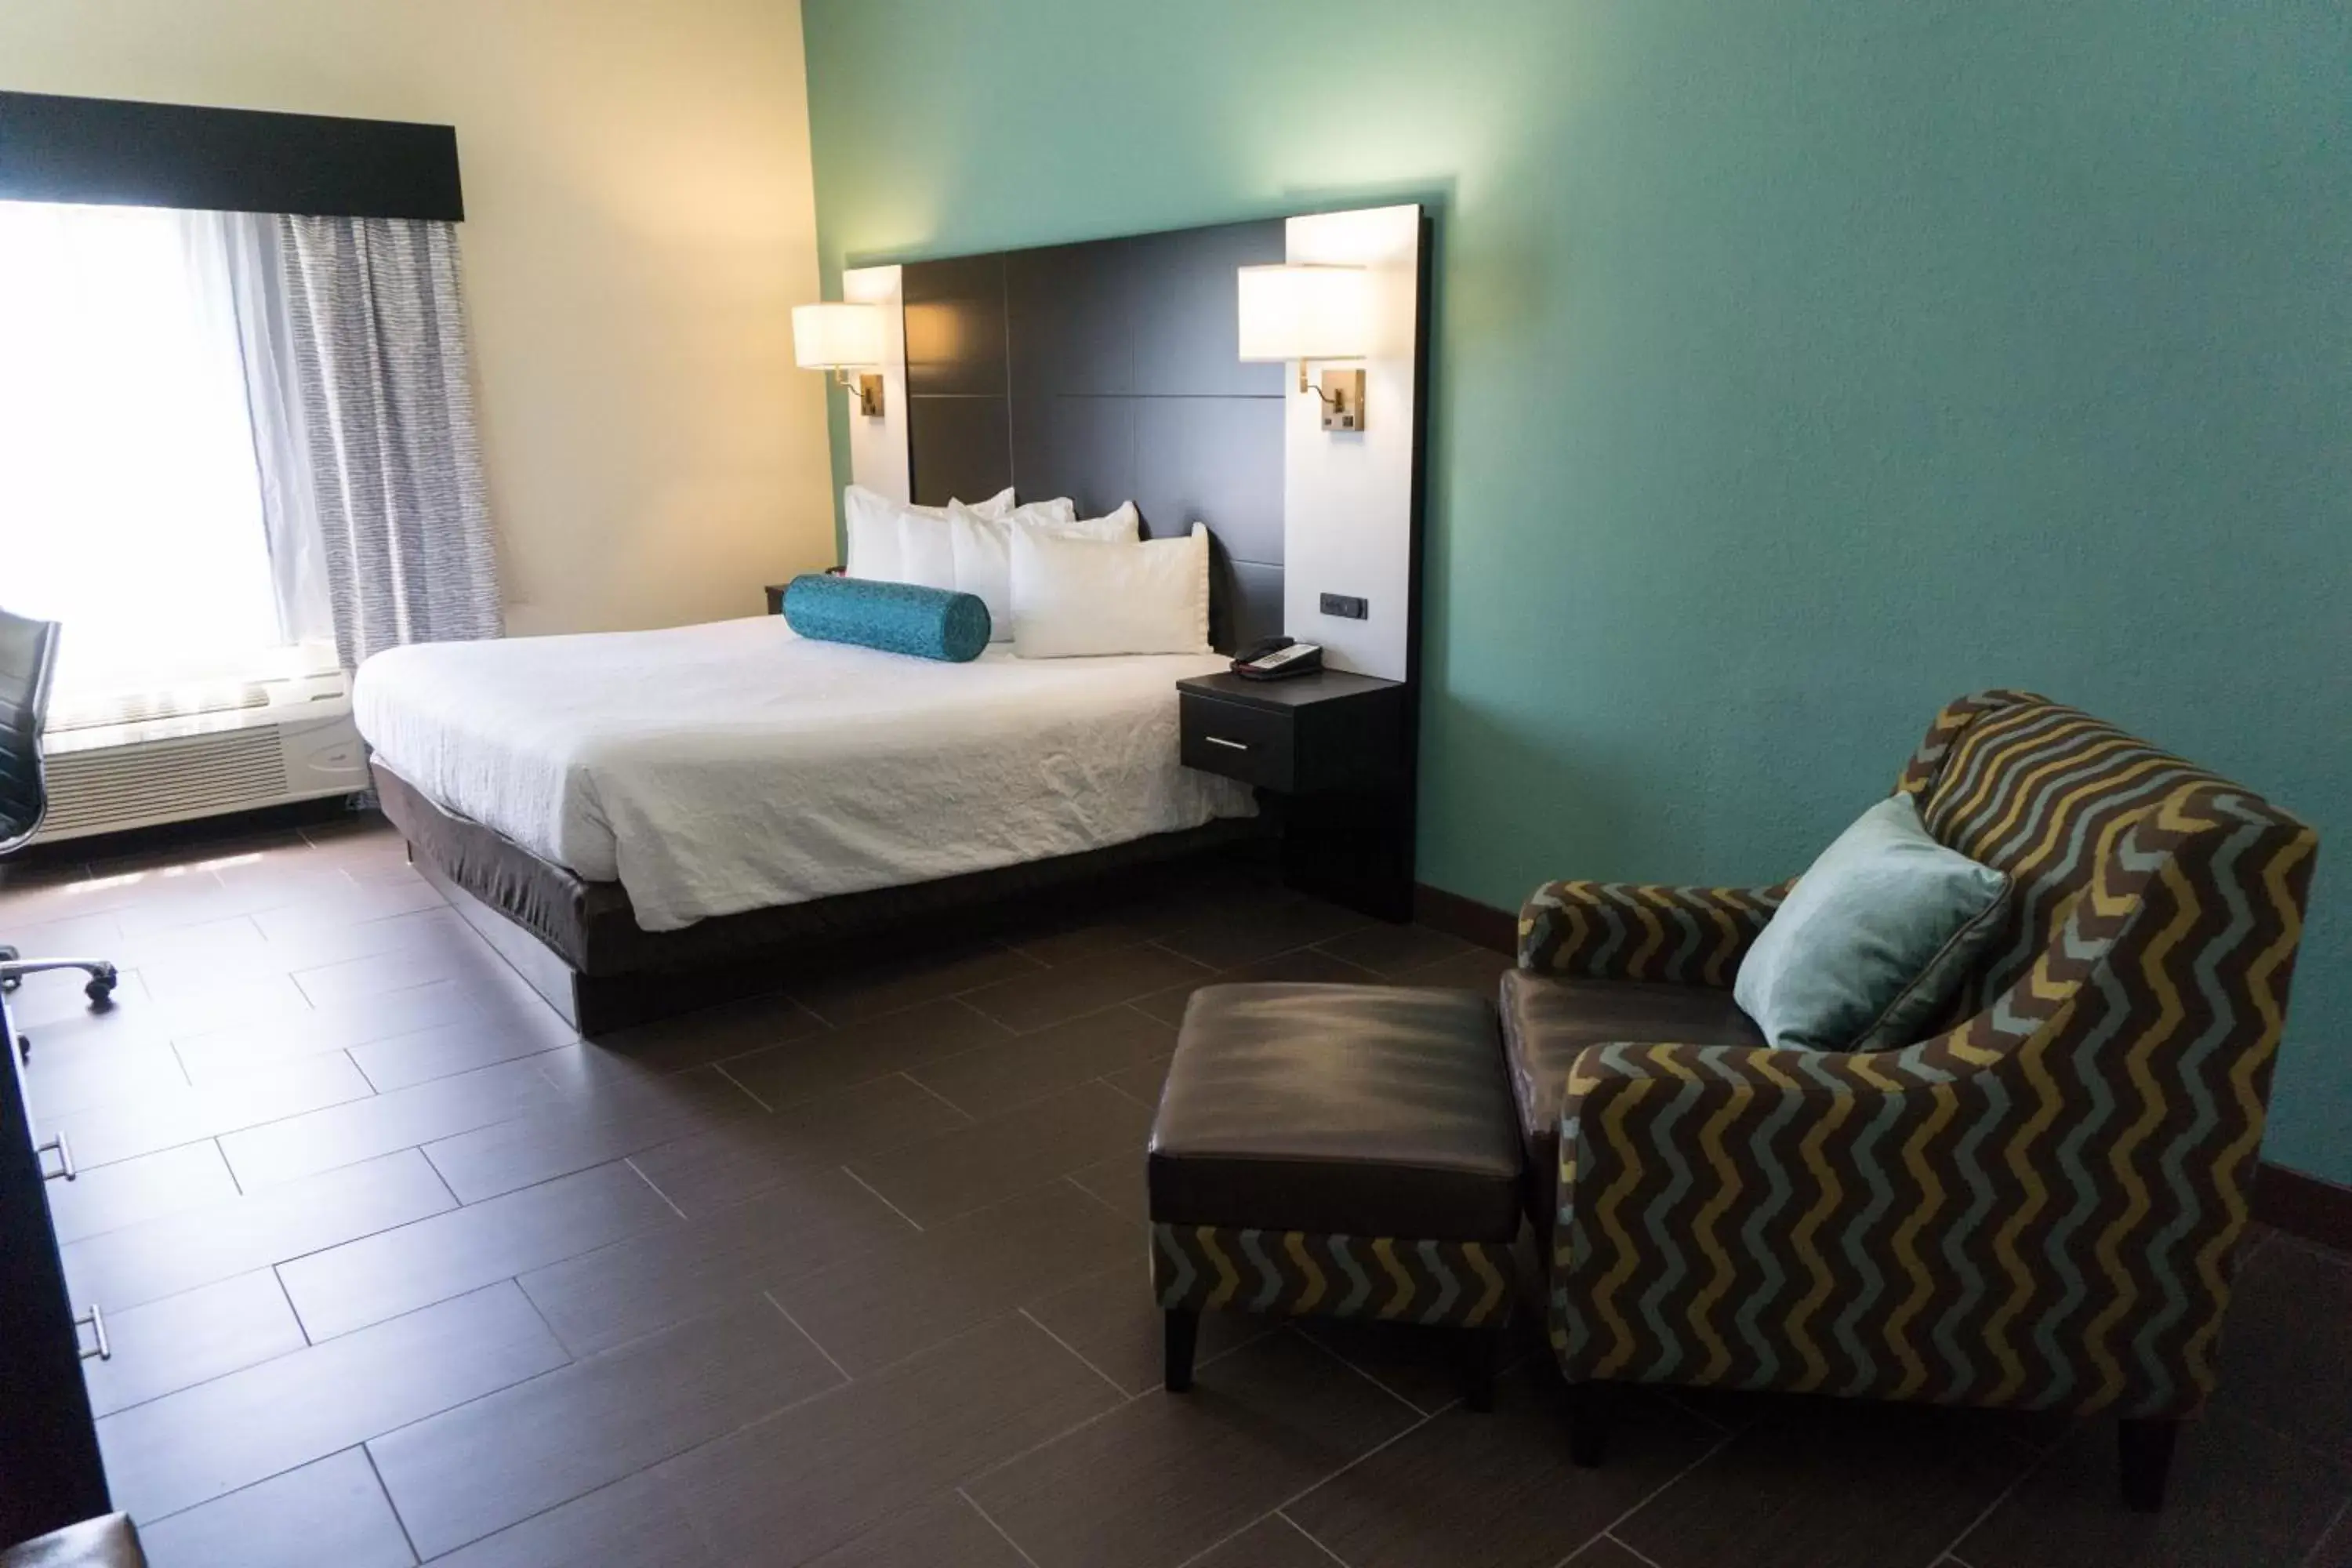 Bedroom, Room Photo in Best Western Mayport Inn and Suites